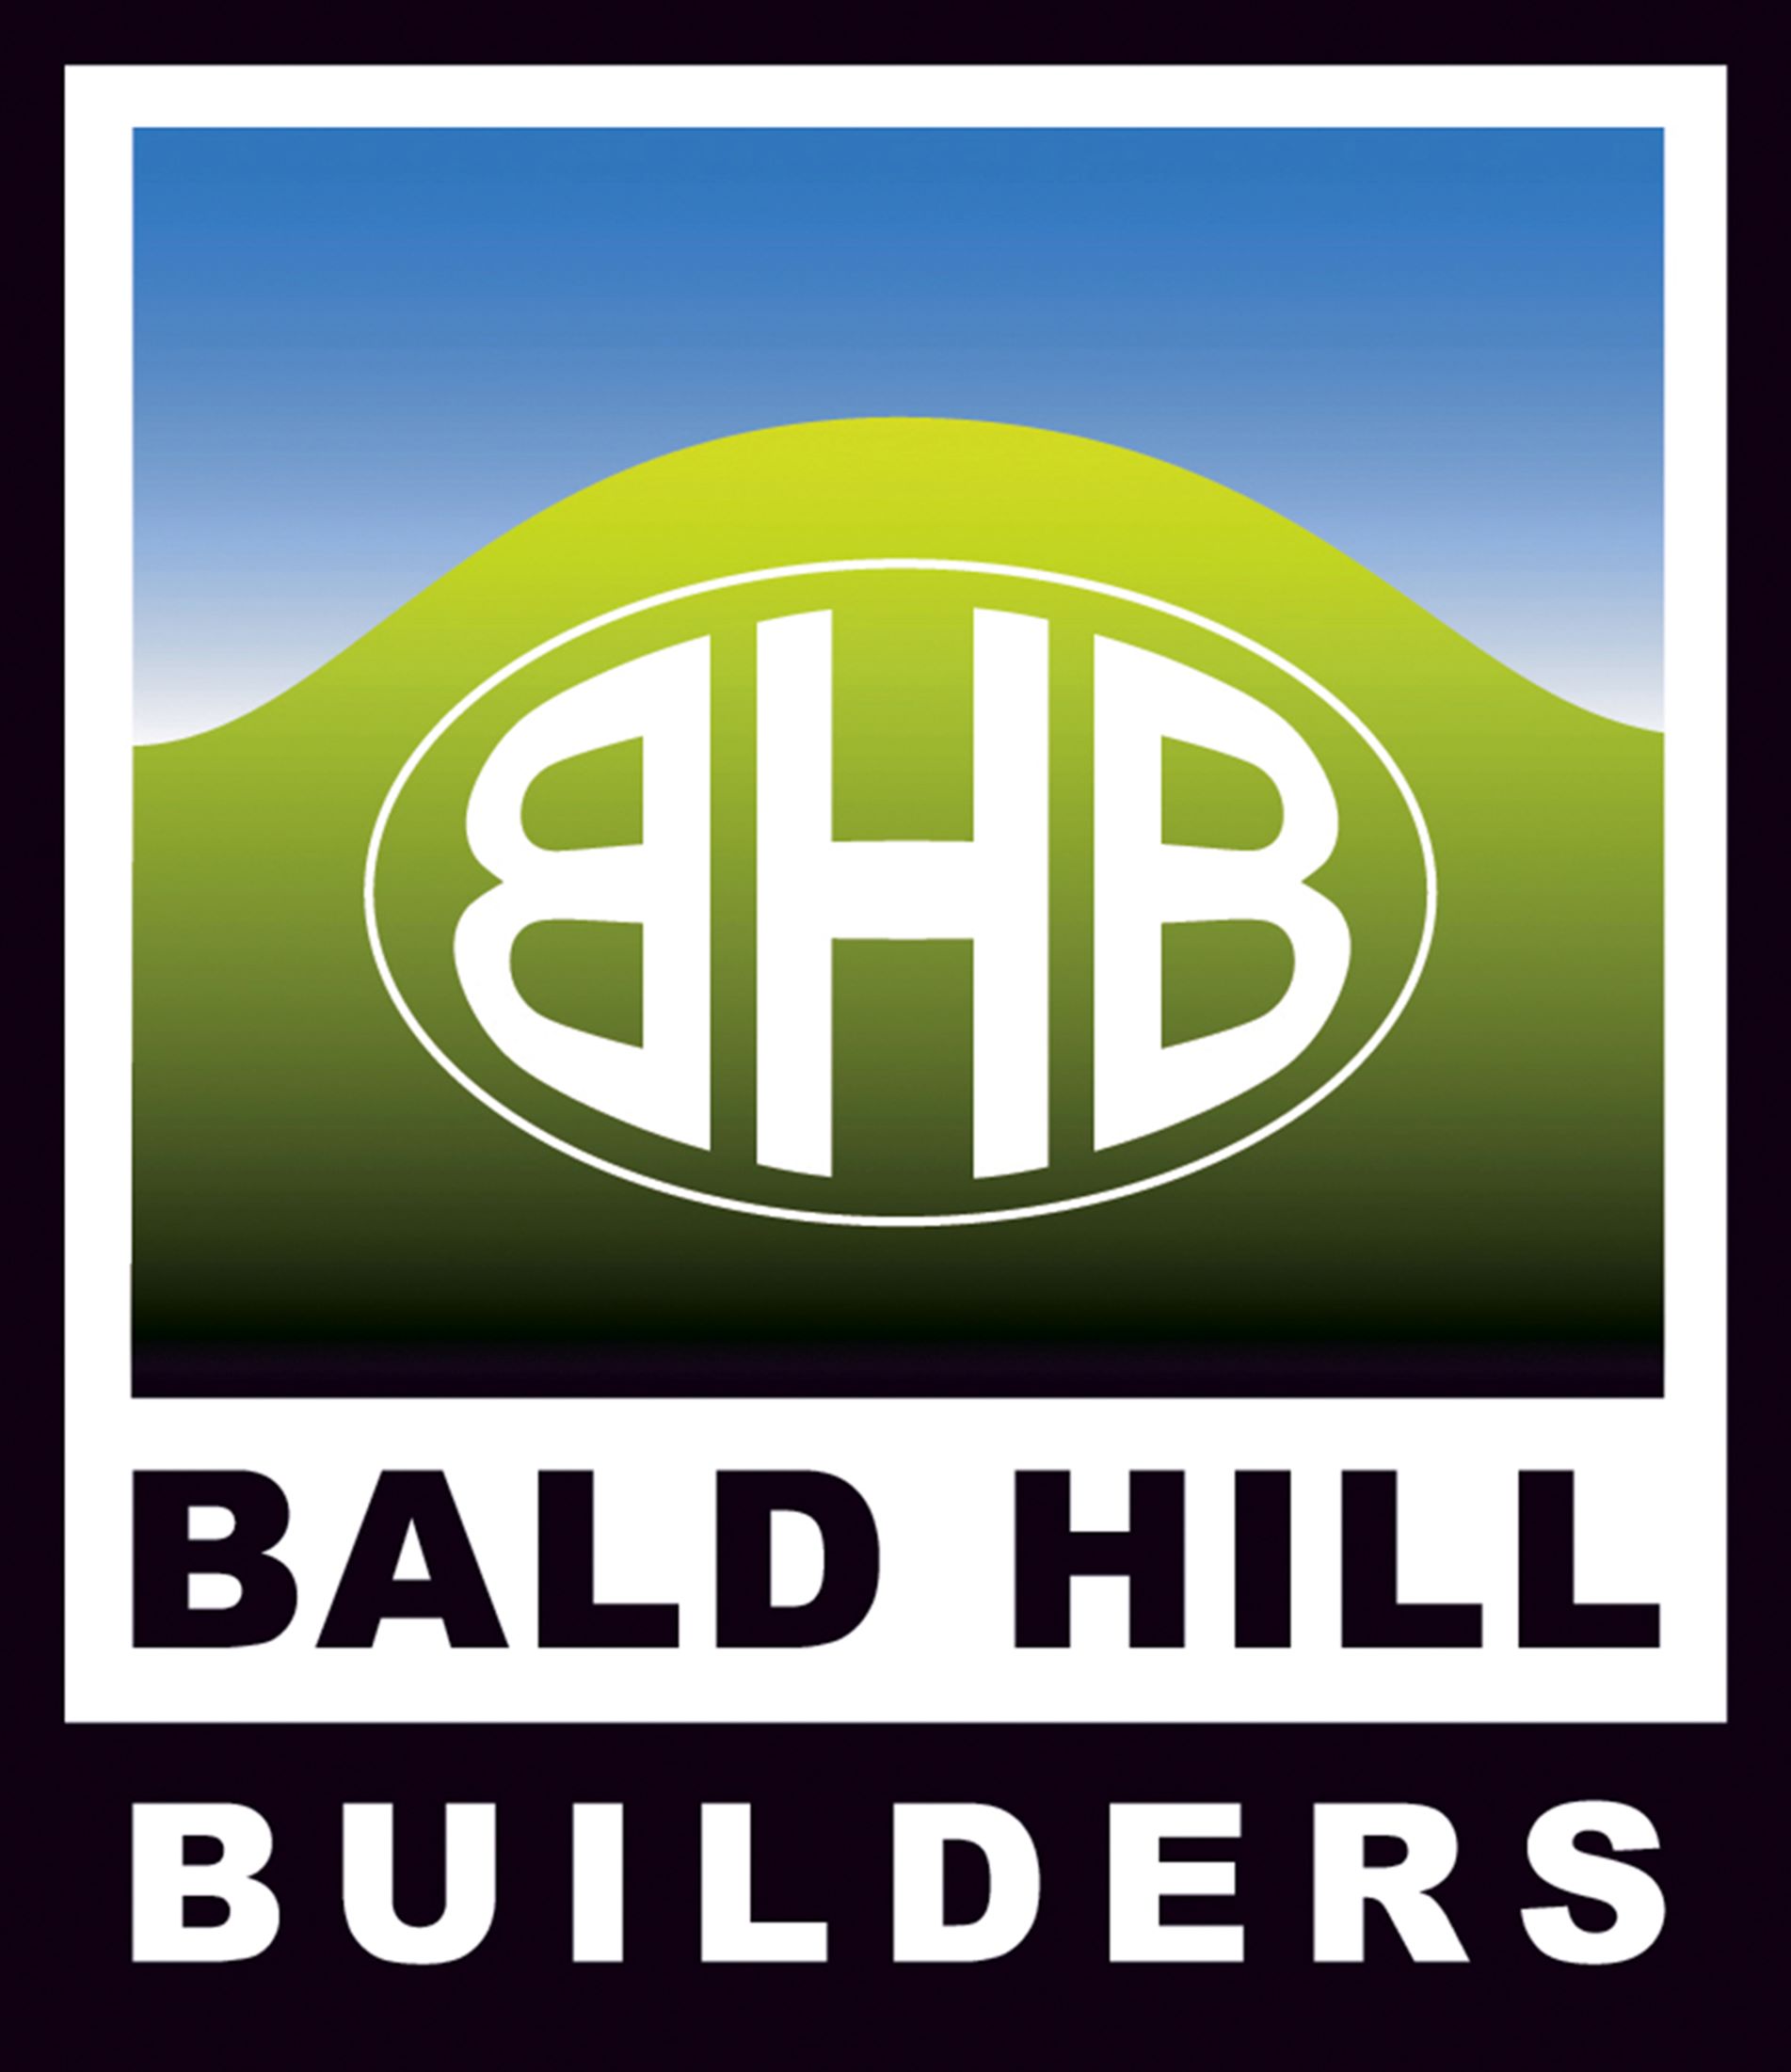 E Bald Hill Builders (Plata)